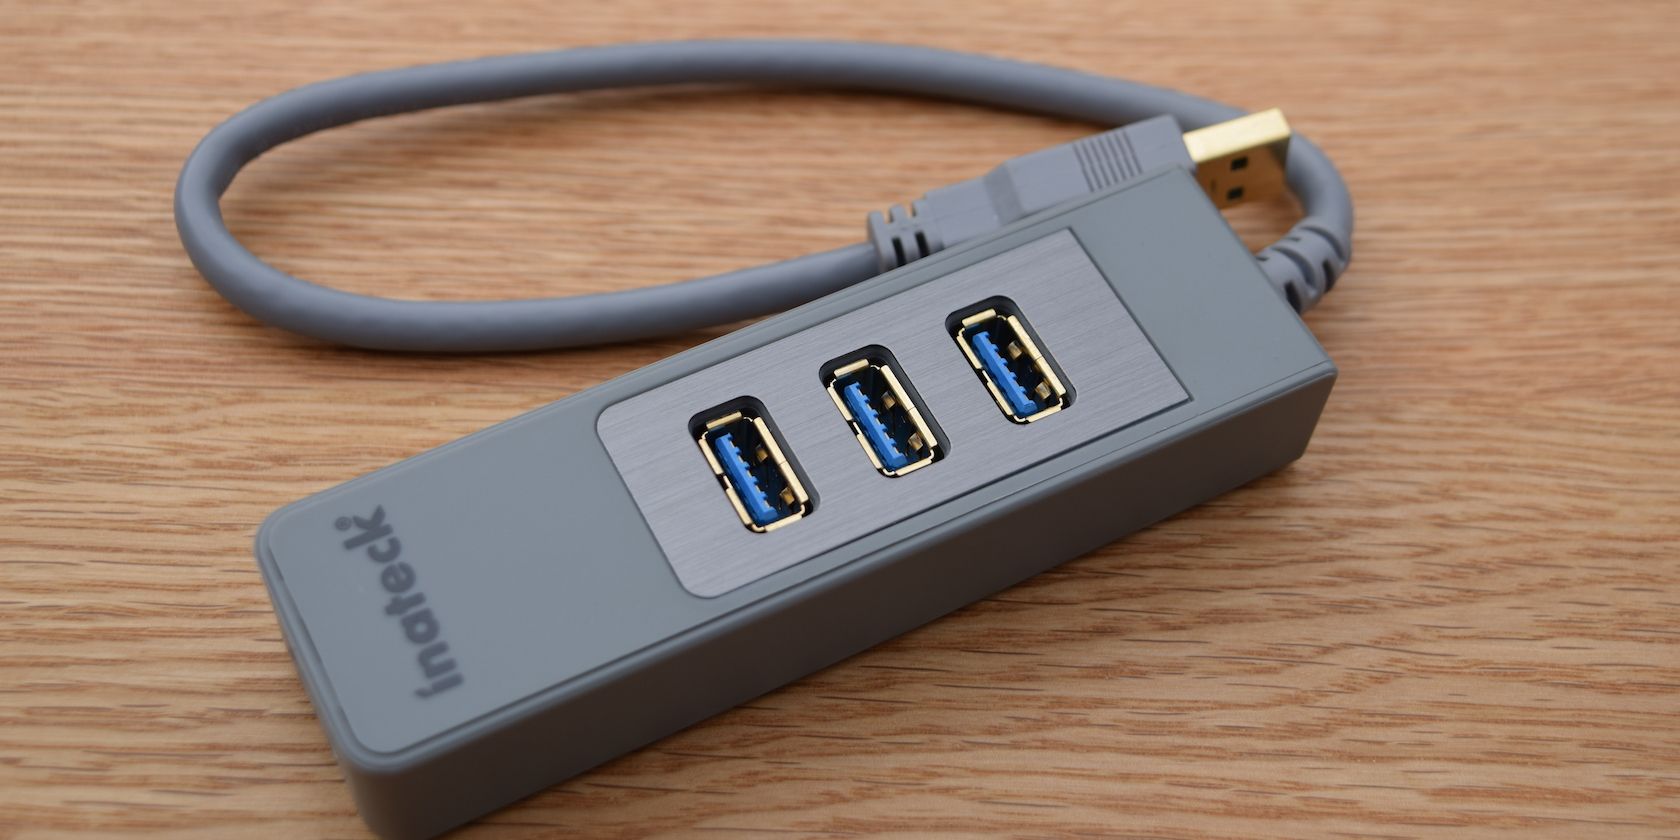 Usb technologies. Е60 USB Hub. USB km Switch. USB-хаб с подставкой для ручек. USB Hub стакан.